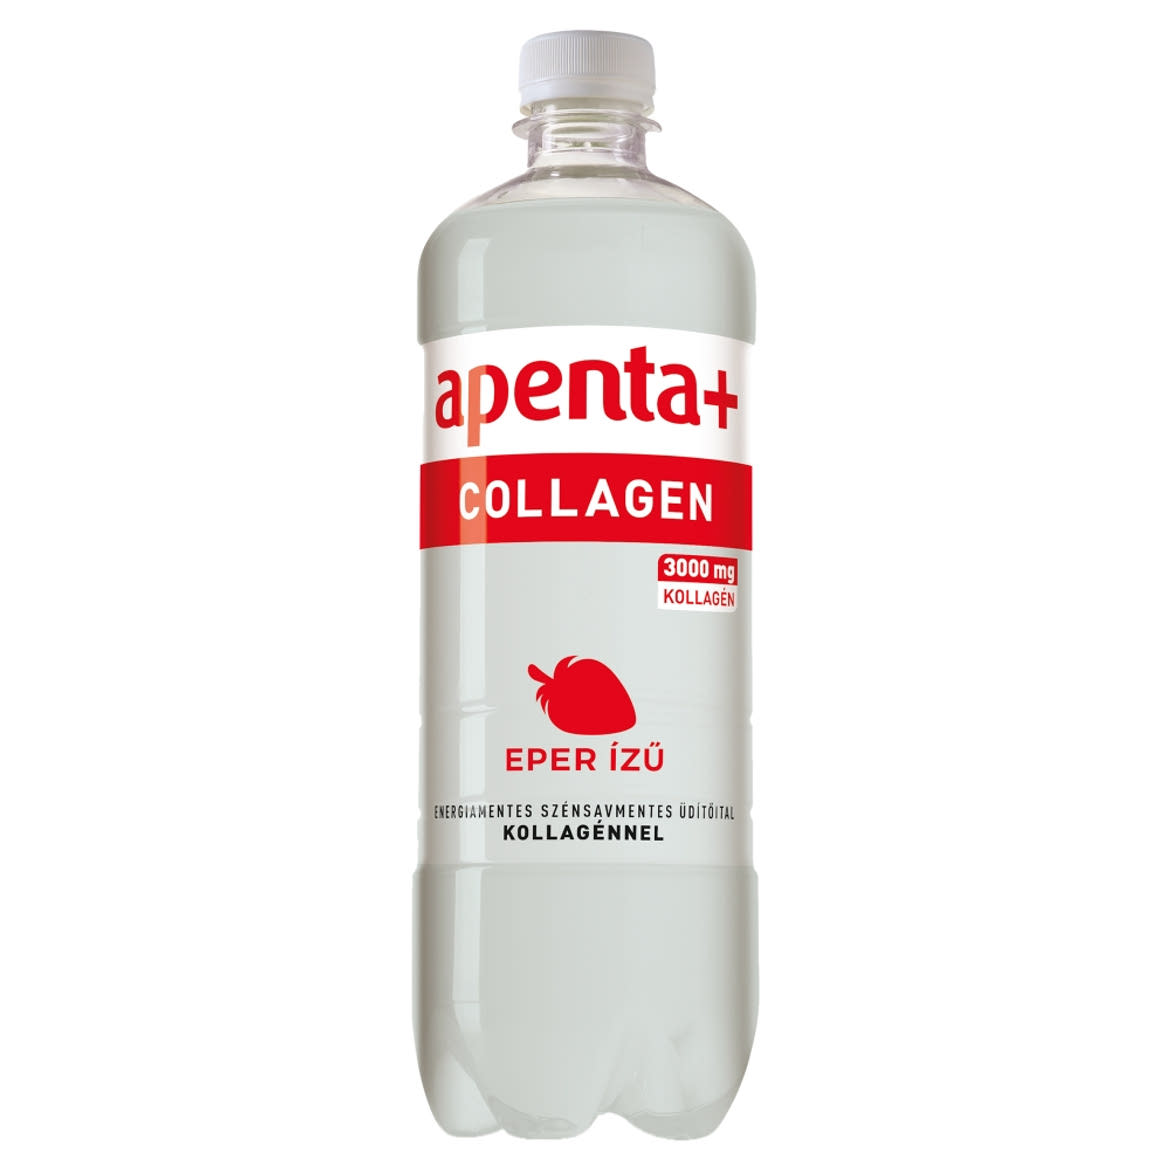 Apenta+ Collagen eperízű szénsavmentes, energiamentes üdítőital édesítőszerekkel, kollagénnel